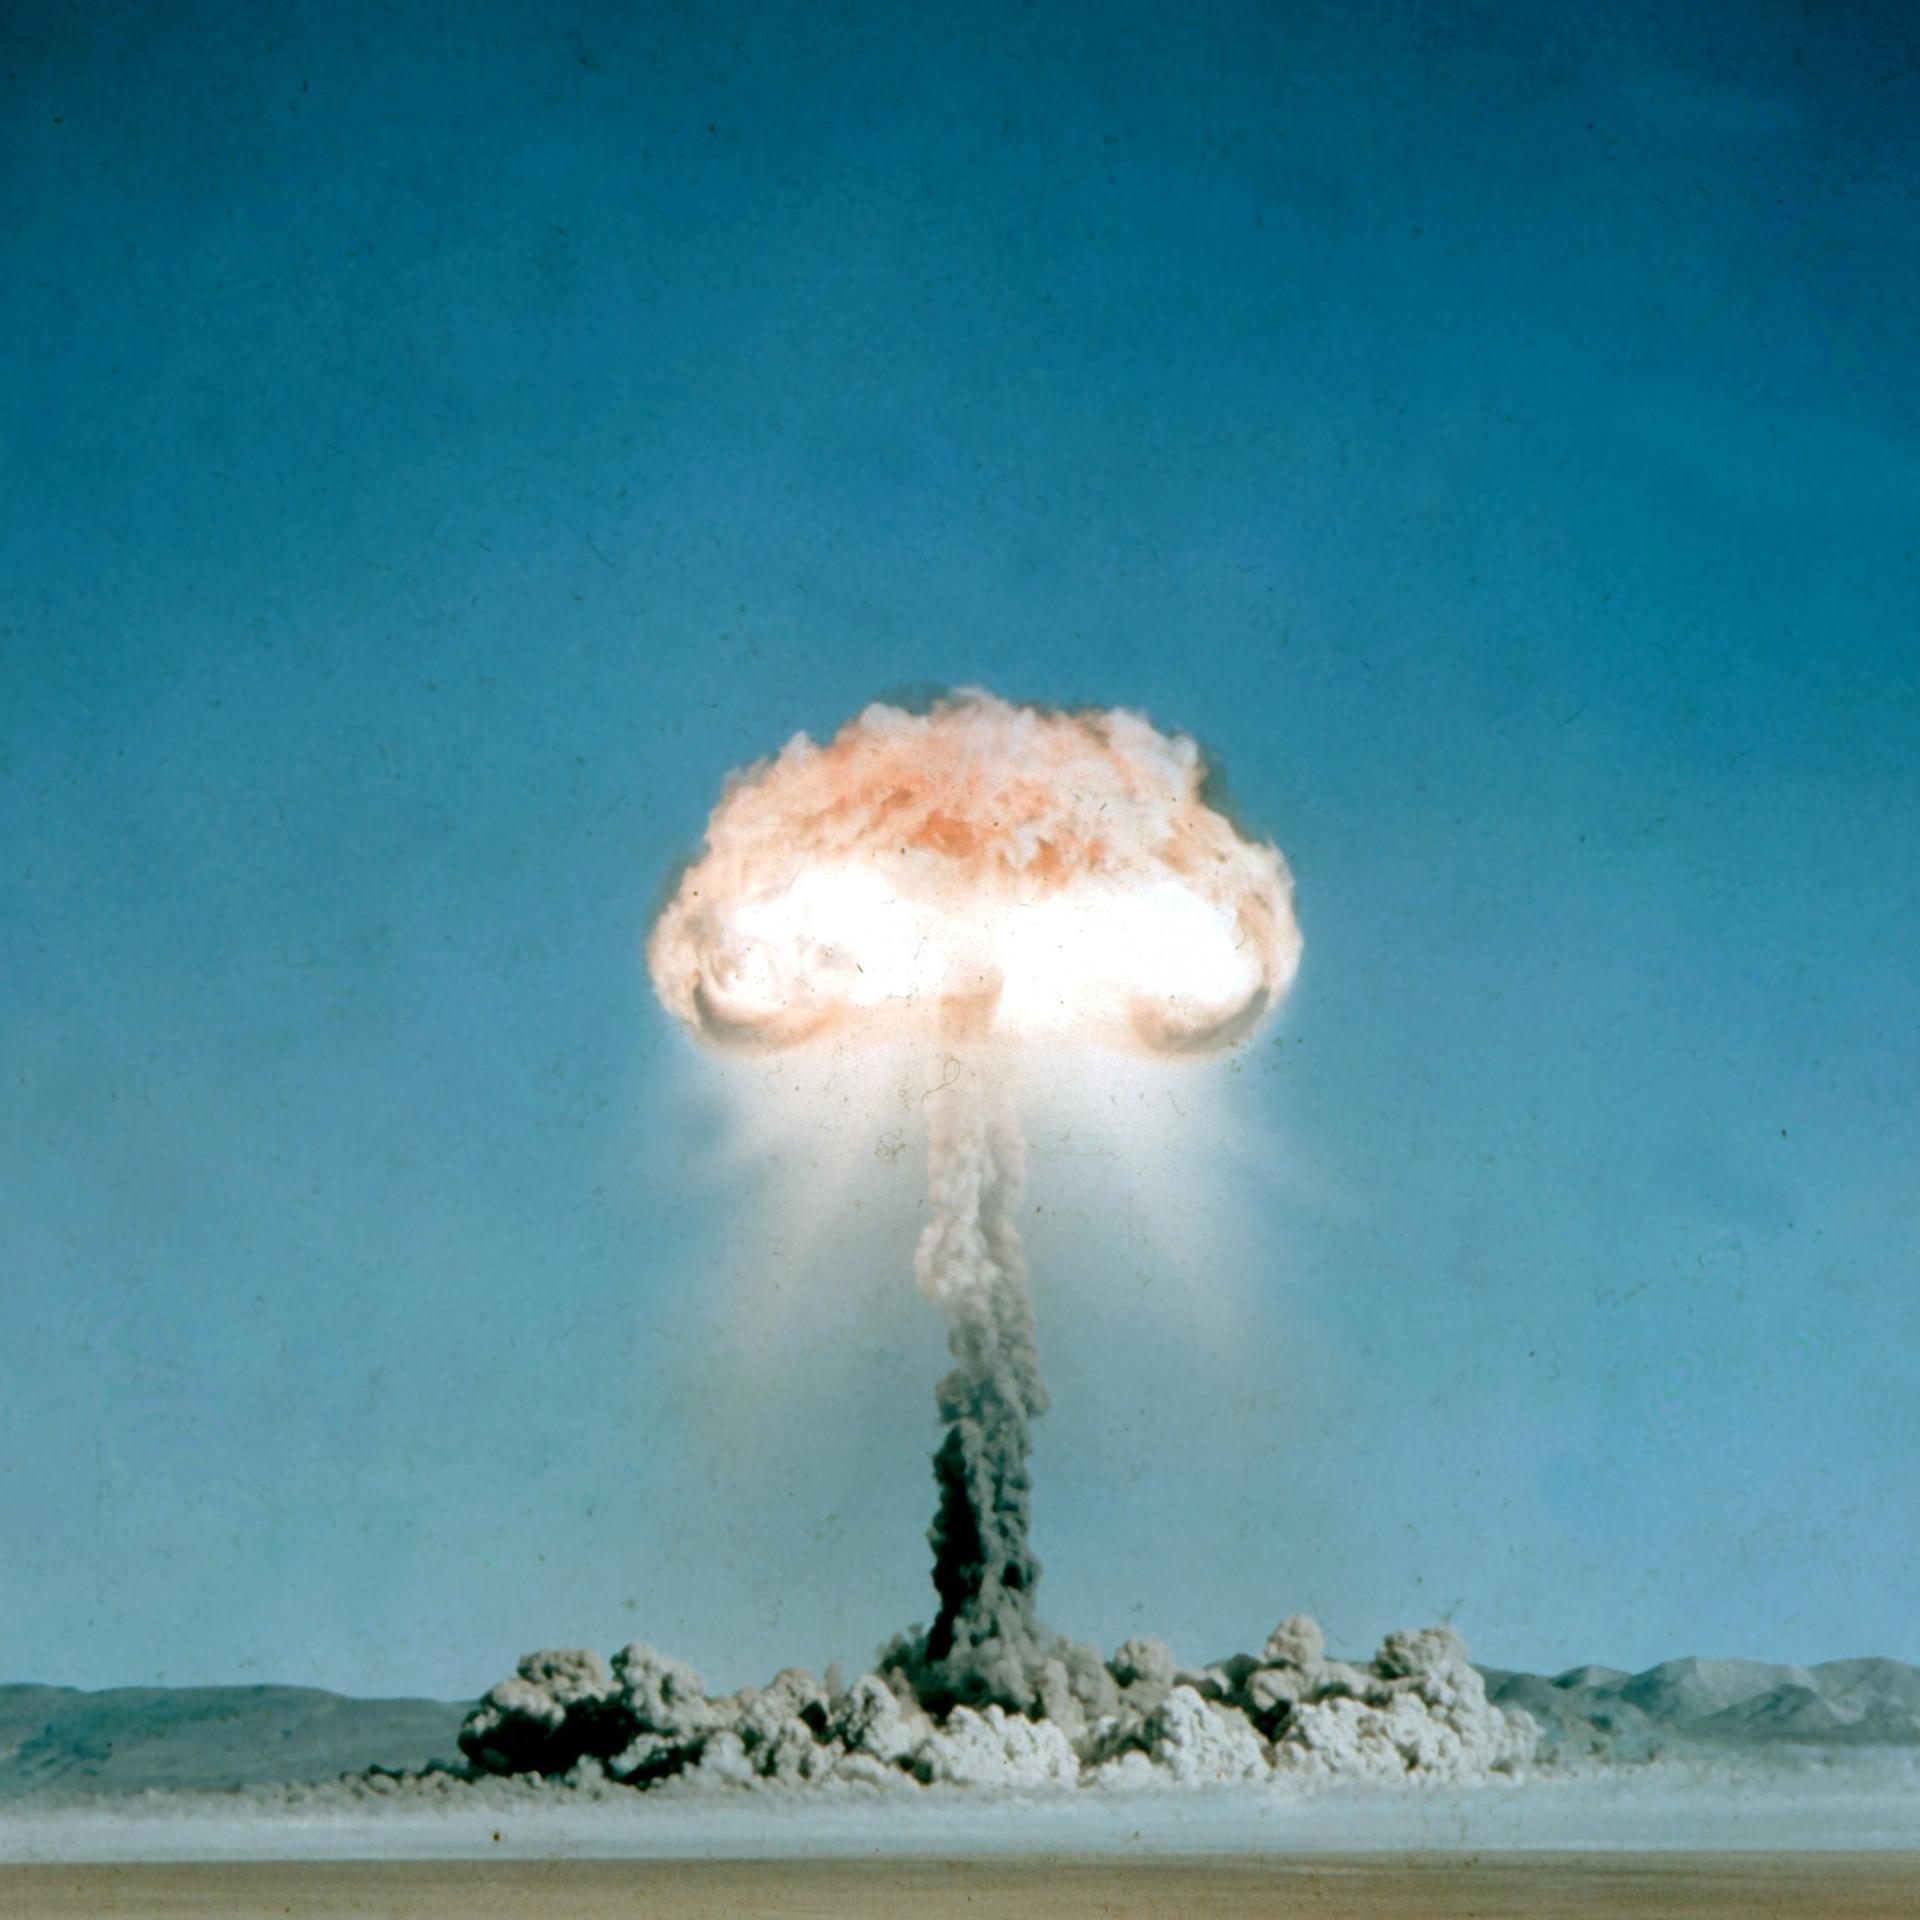 Die Atombombe - Wie die schlimmste Waffe aller Zeiten Frieden schaffen soll